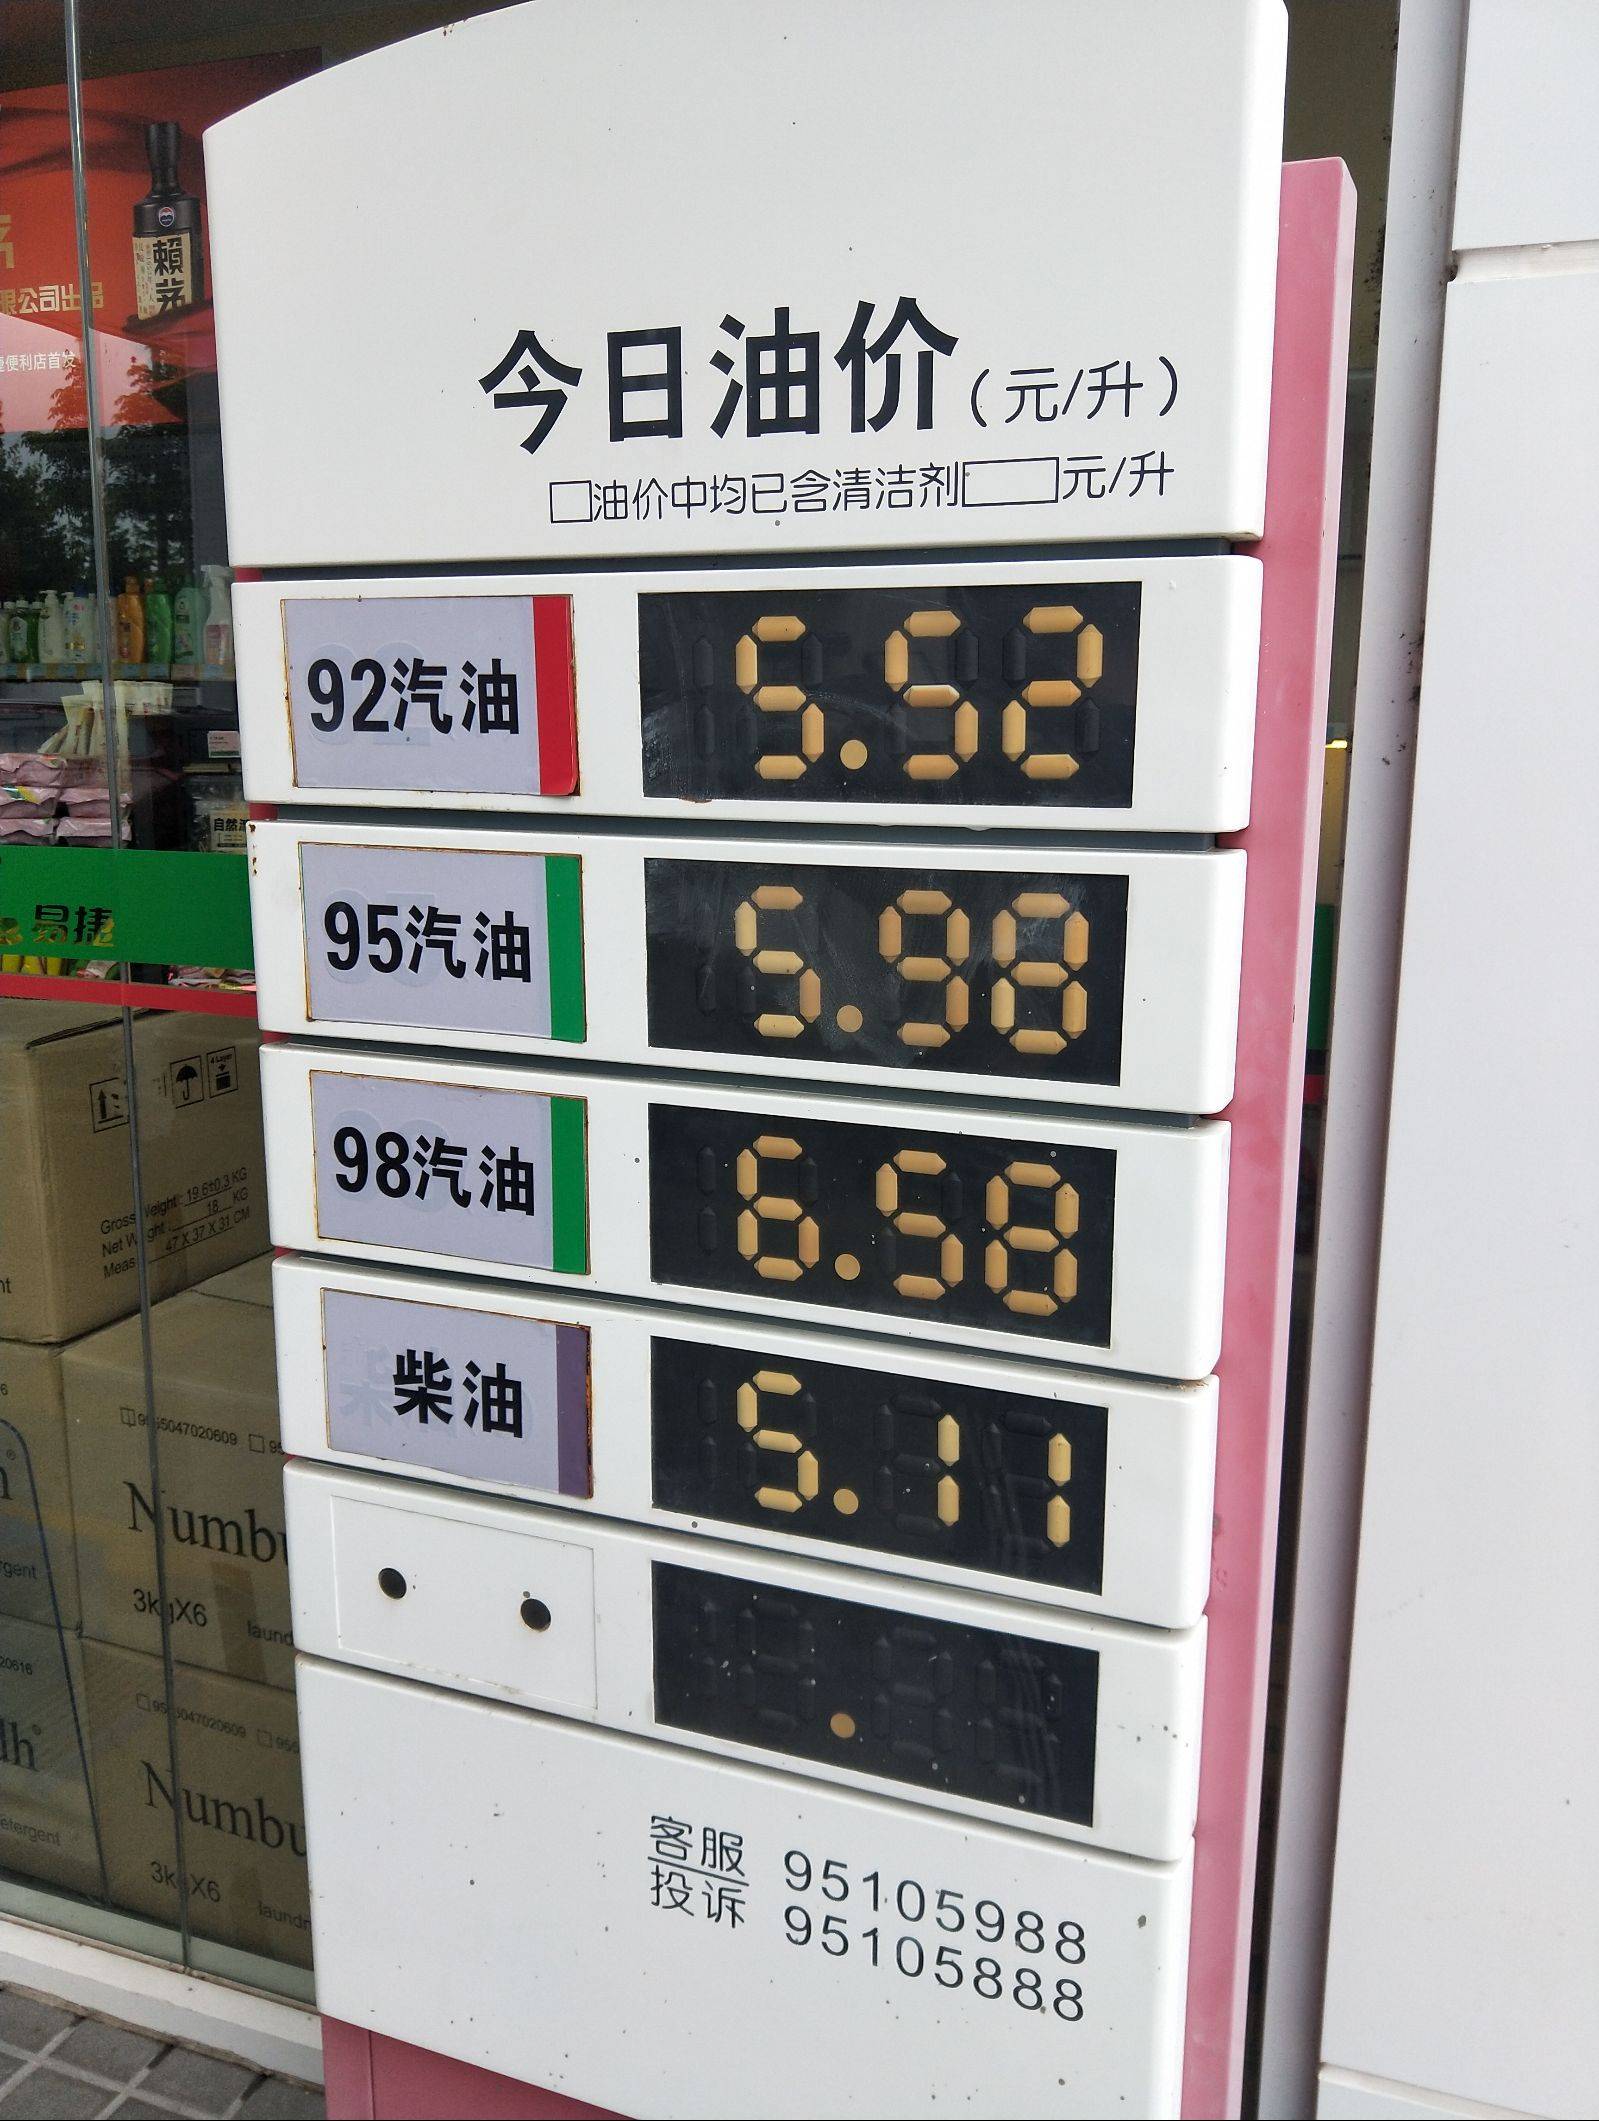 油价迎年内第四降95号汽油每升下调026元